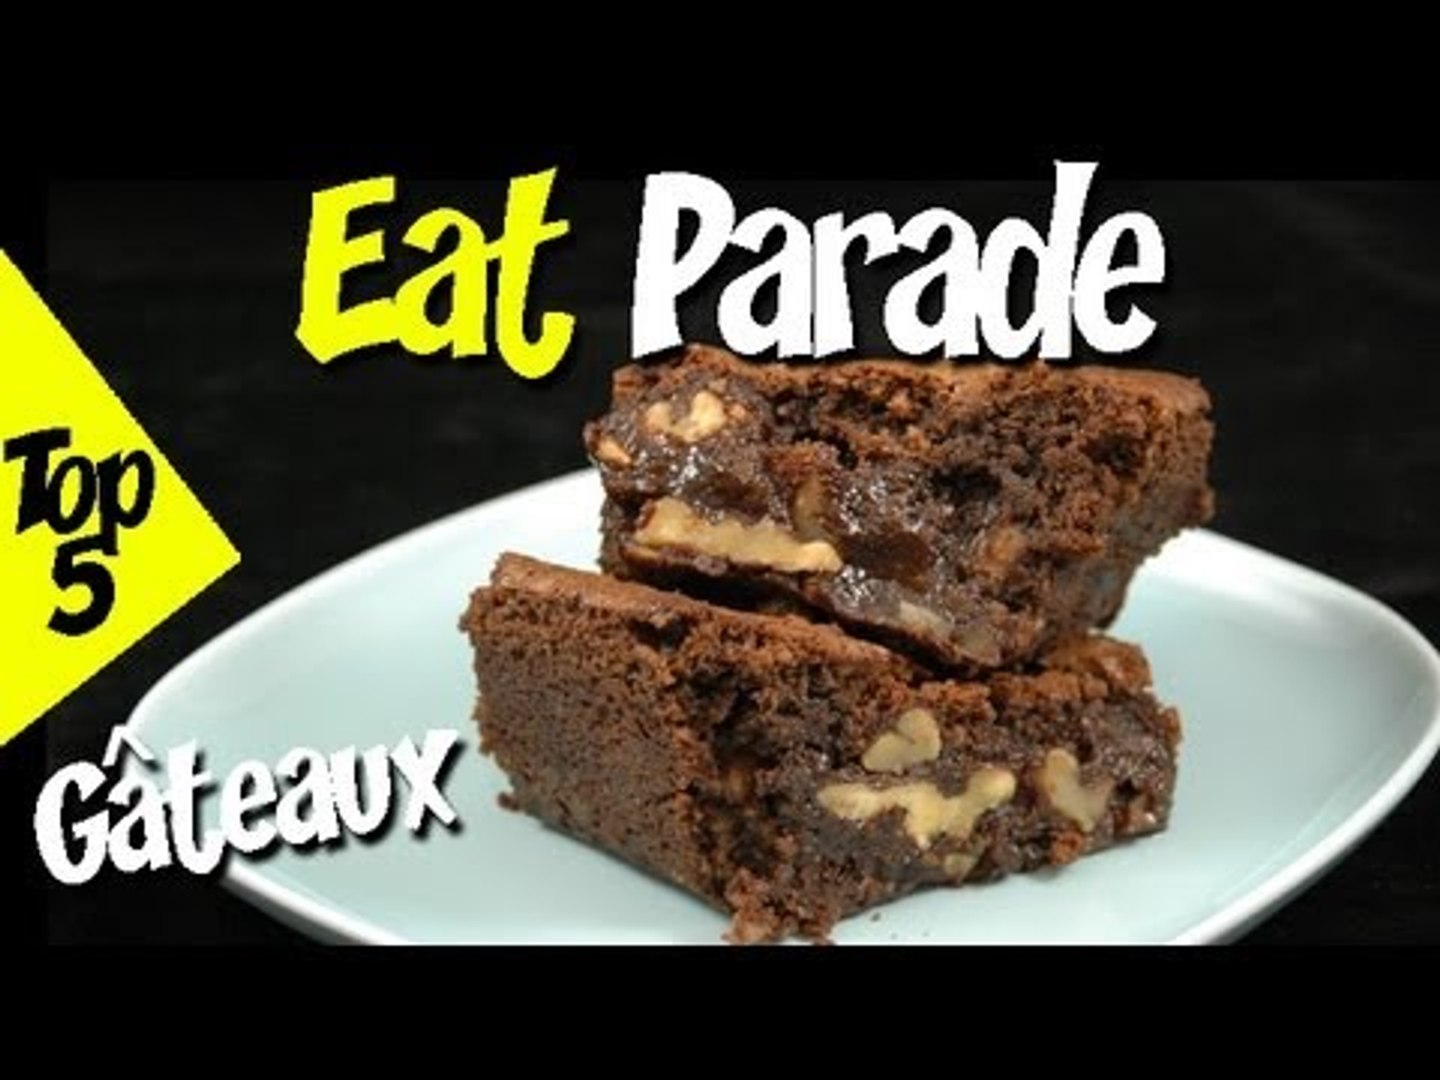 Top 5 Eat Parade Recettes De Gateaux Video Dailymotion